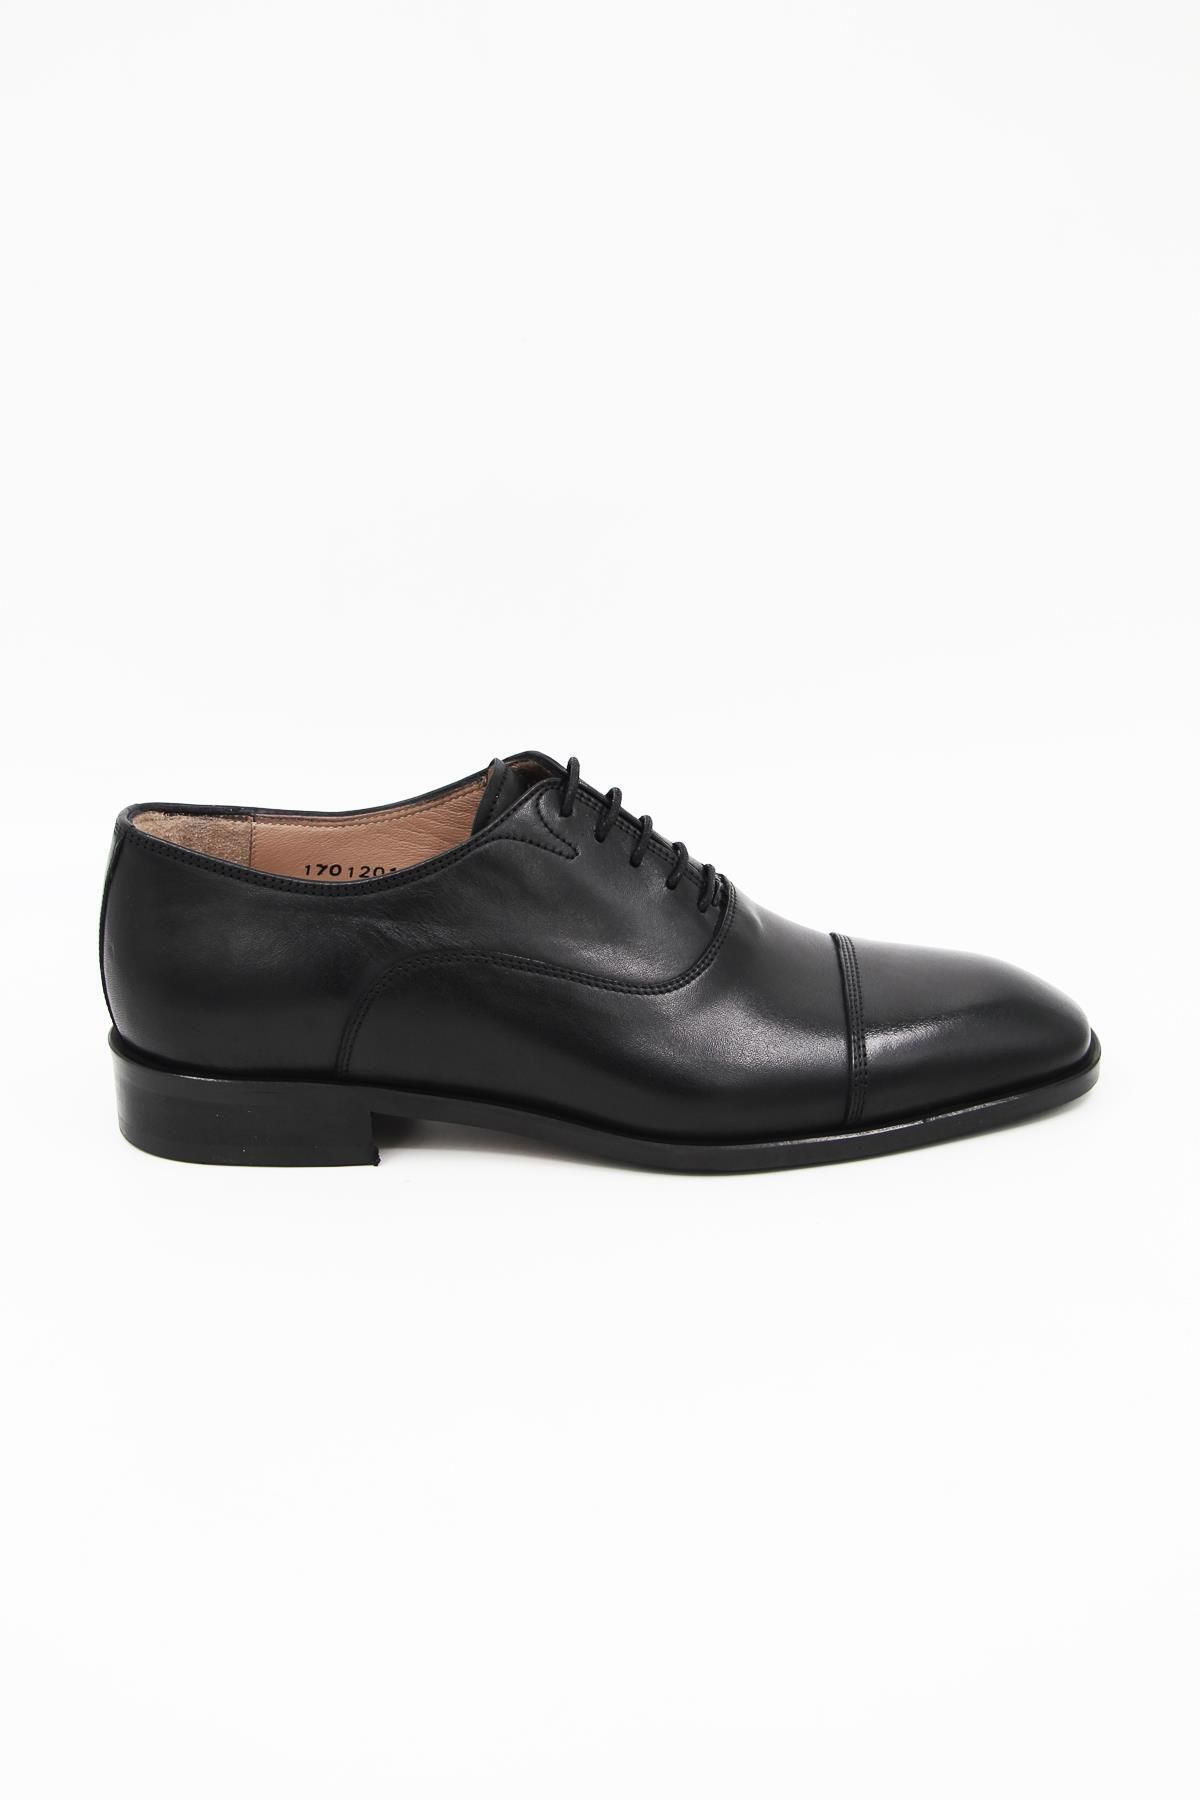 Nevzat Onay 7105-864 Erkek Klasik Ayakkabı - Siyah